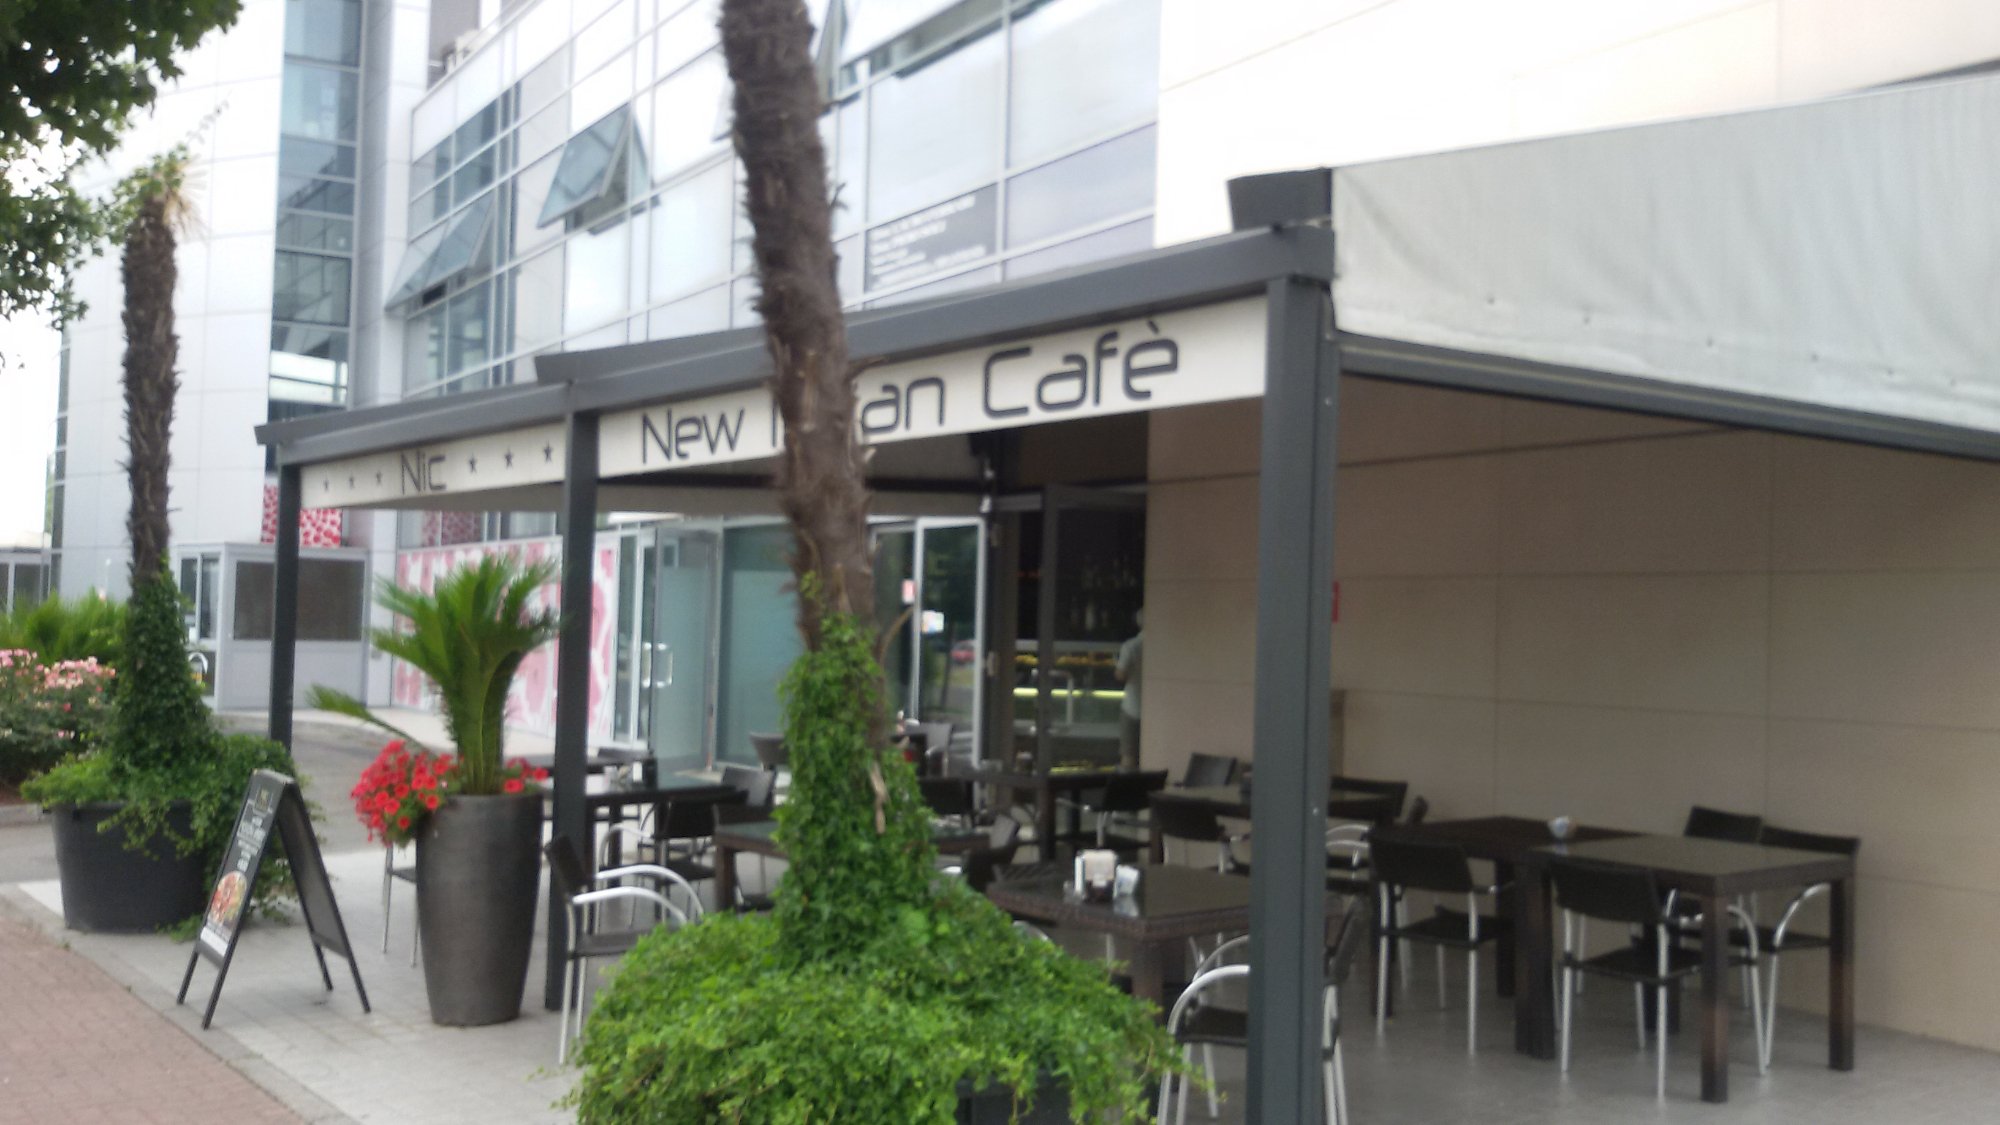 New Italian Cafe, Carpi